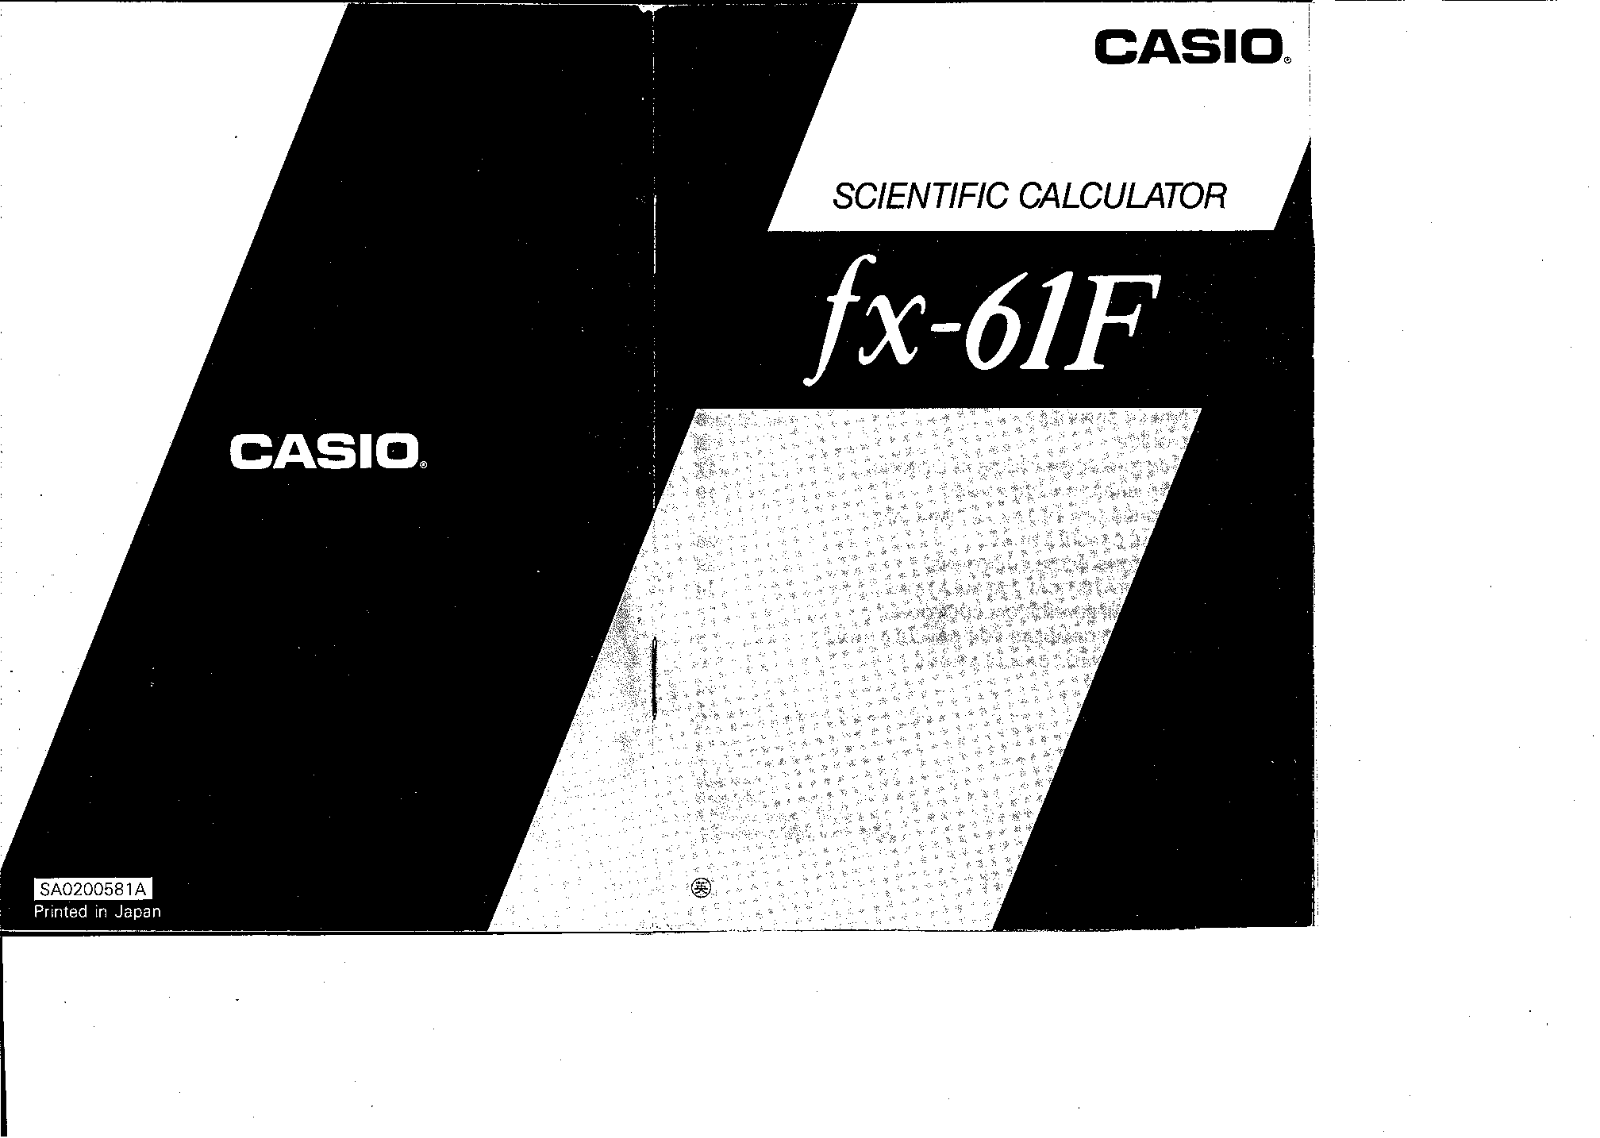 Casio FX-61F Manual